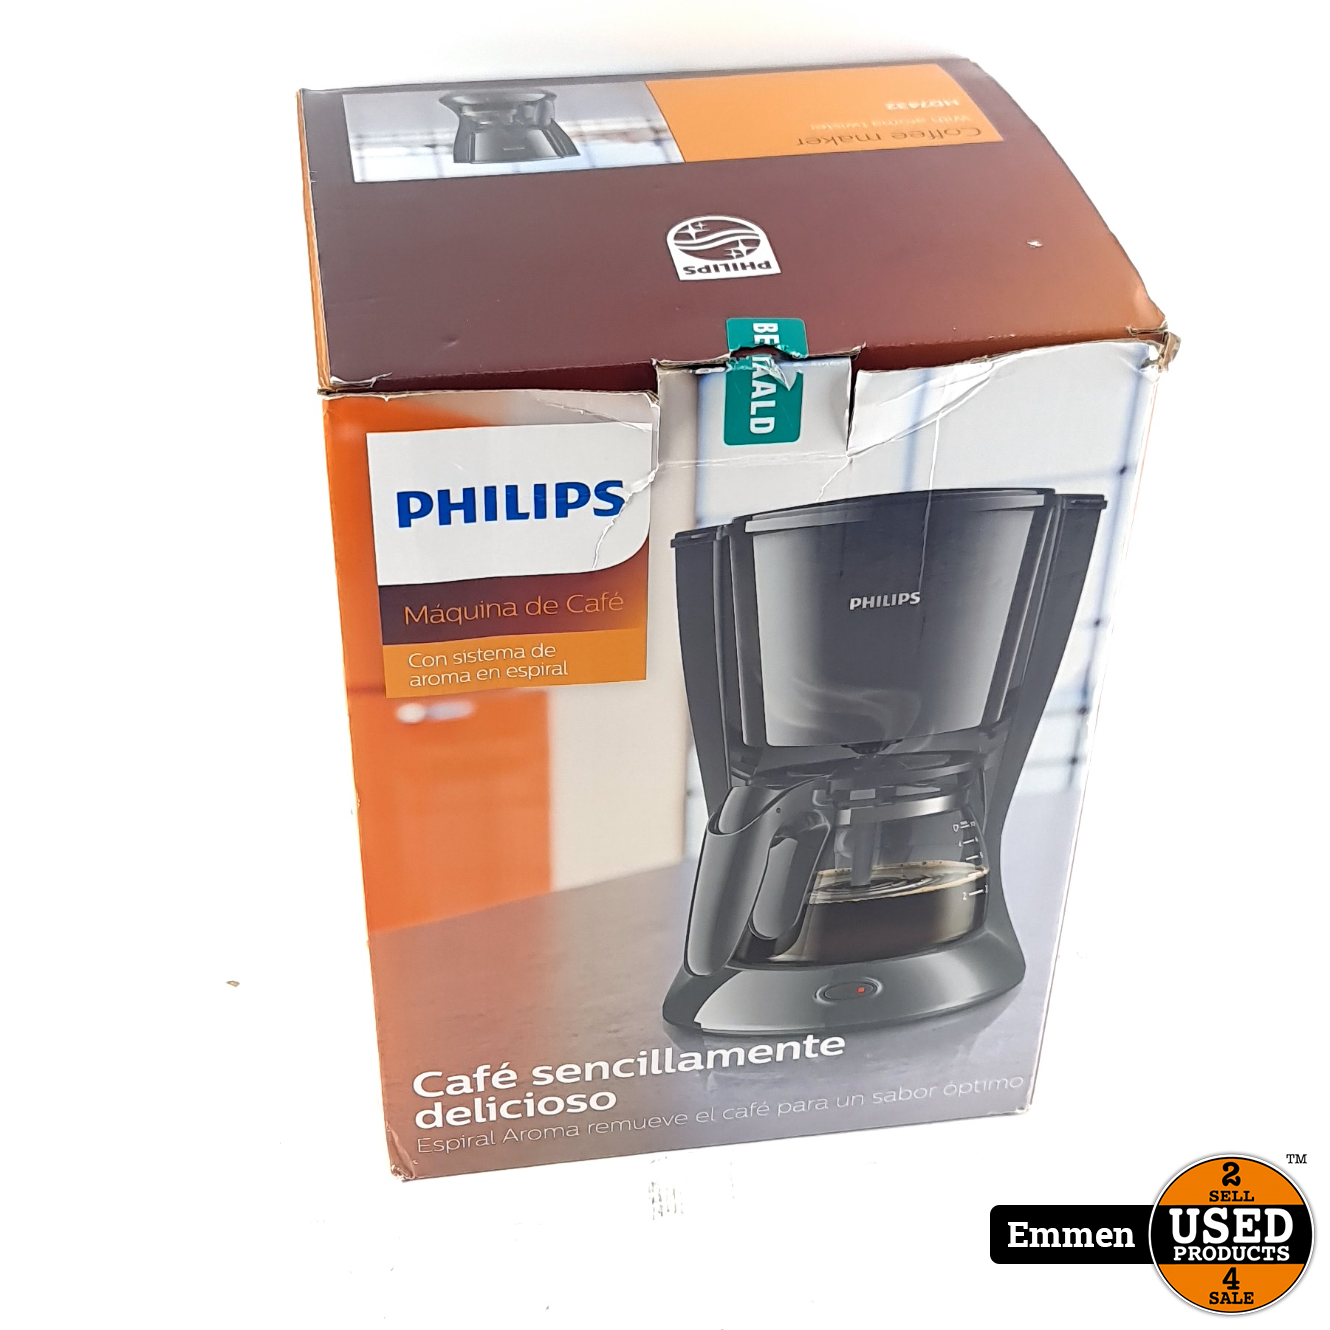 unübertrefflich Philips Koffiezetapparaat | Used Products - Nieuw Doos HD7432/10 In Emmen Daily